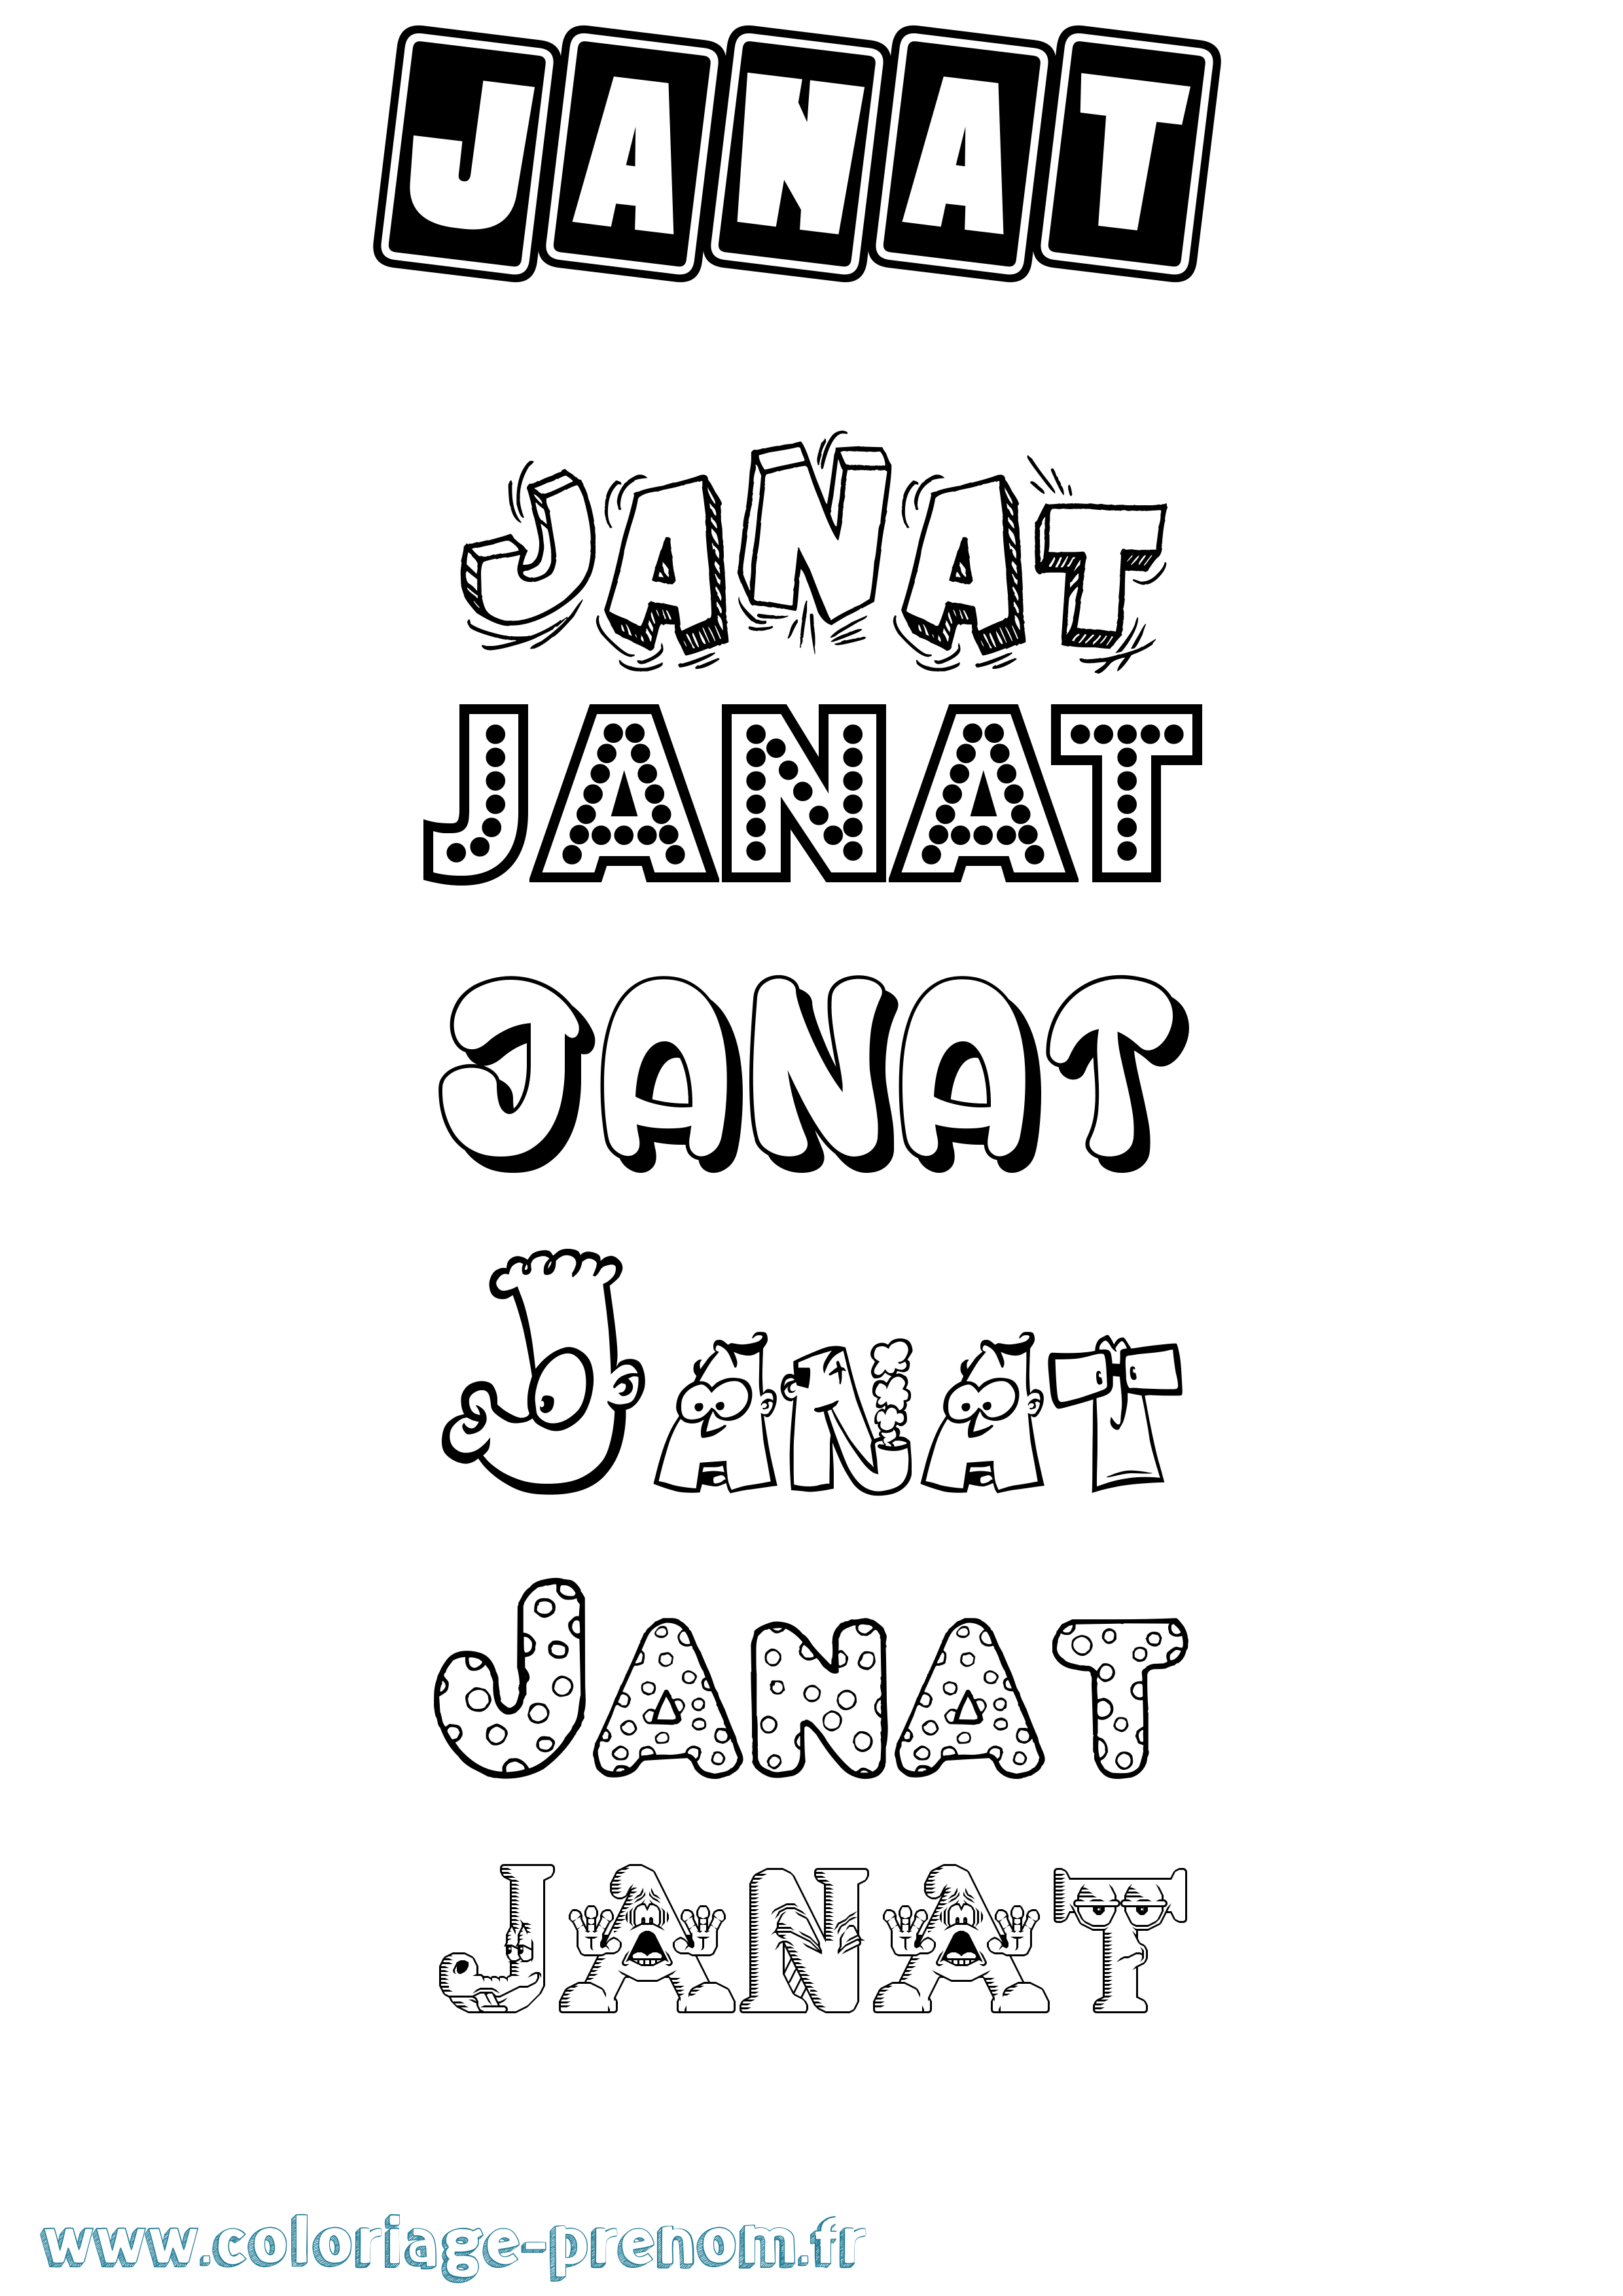 Coloriage prénom Janat Fun